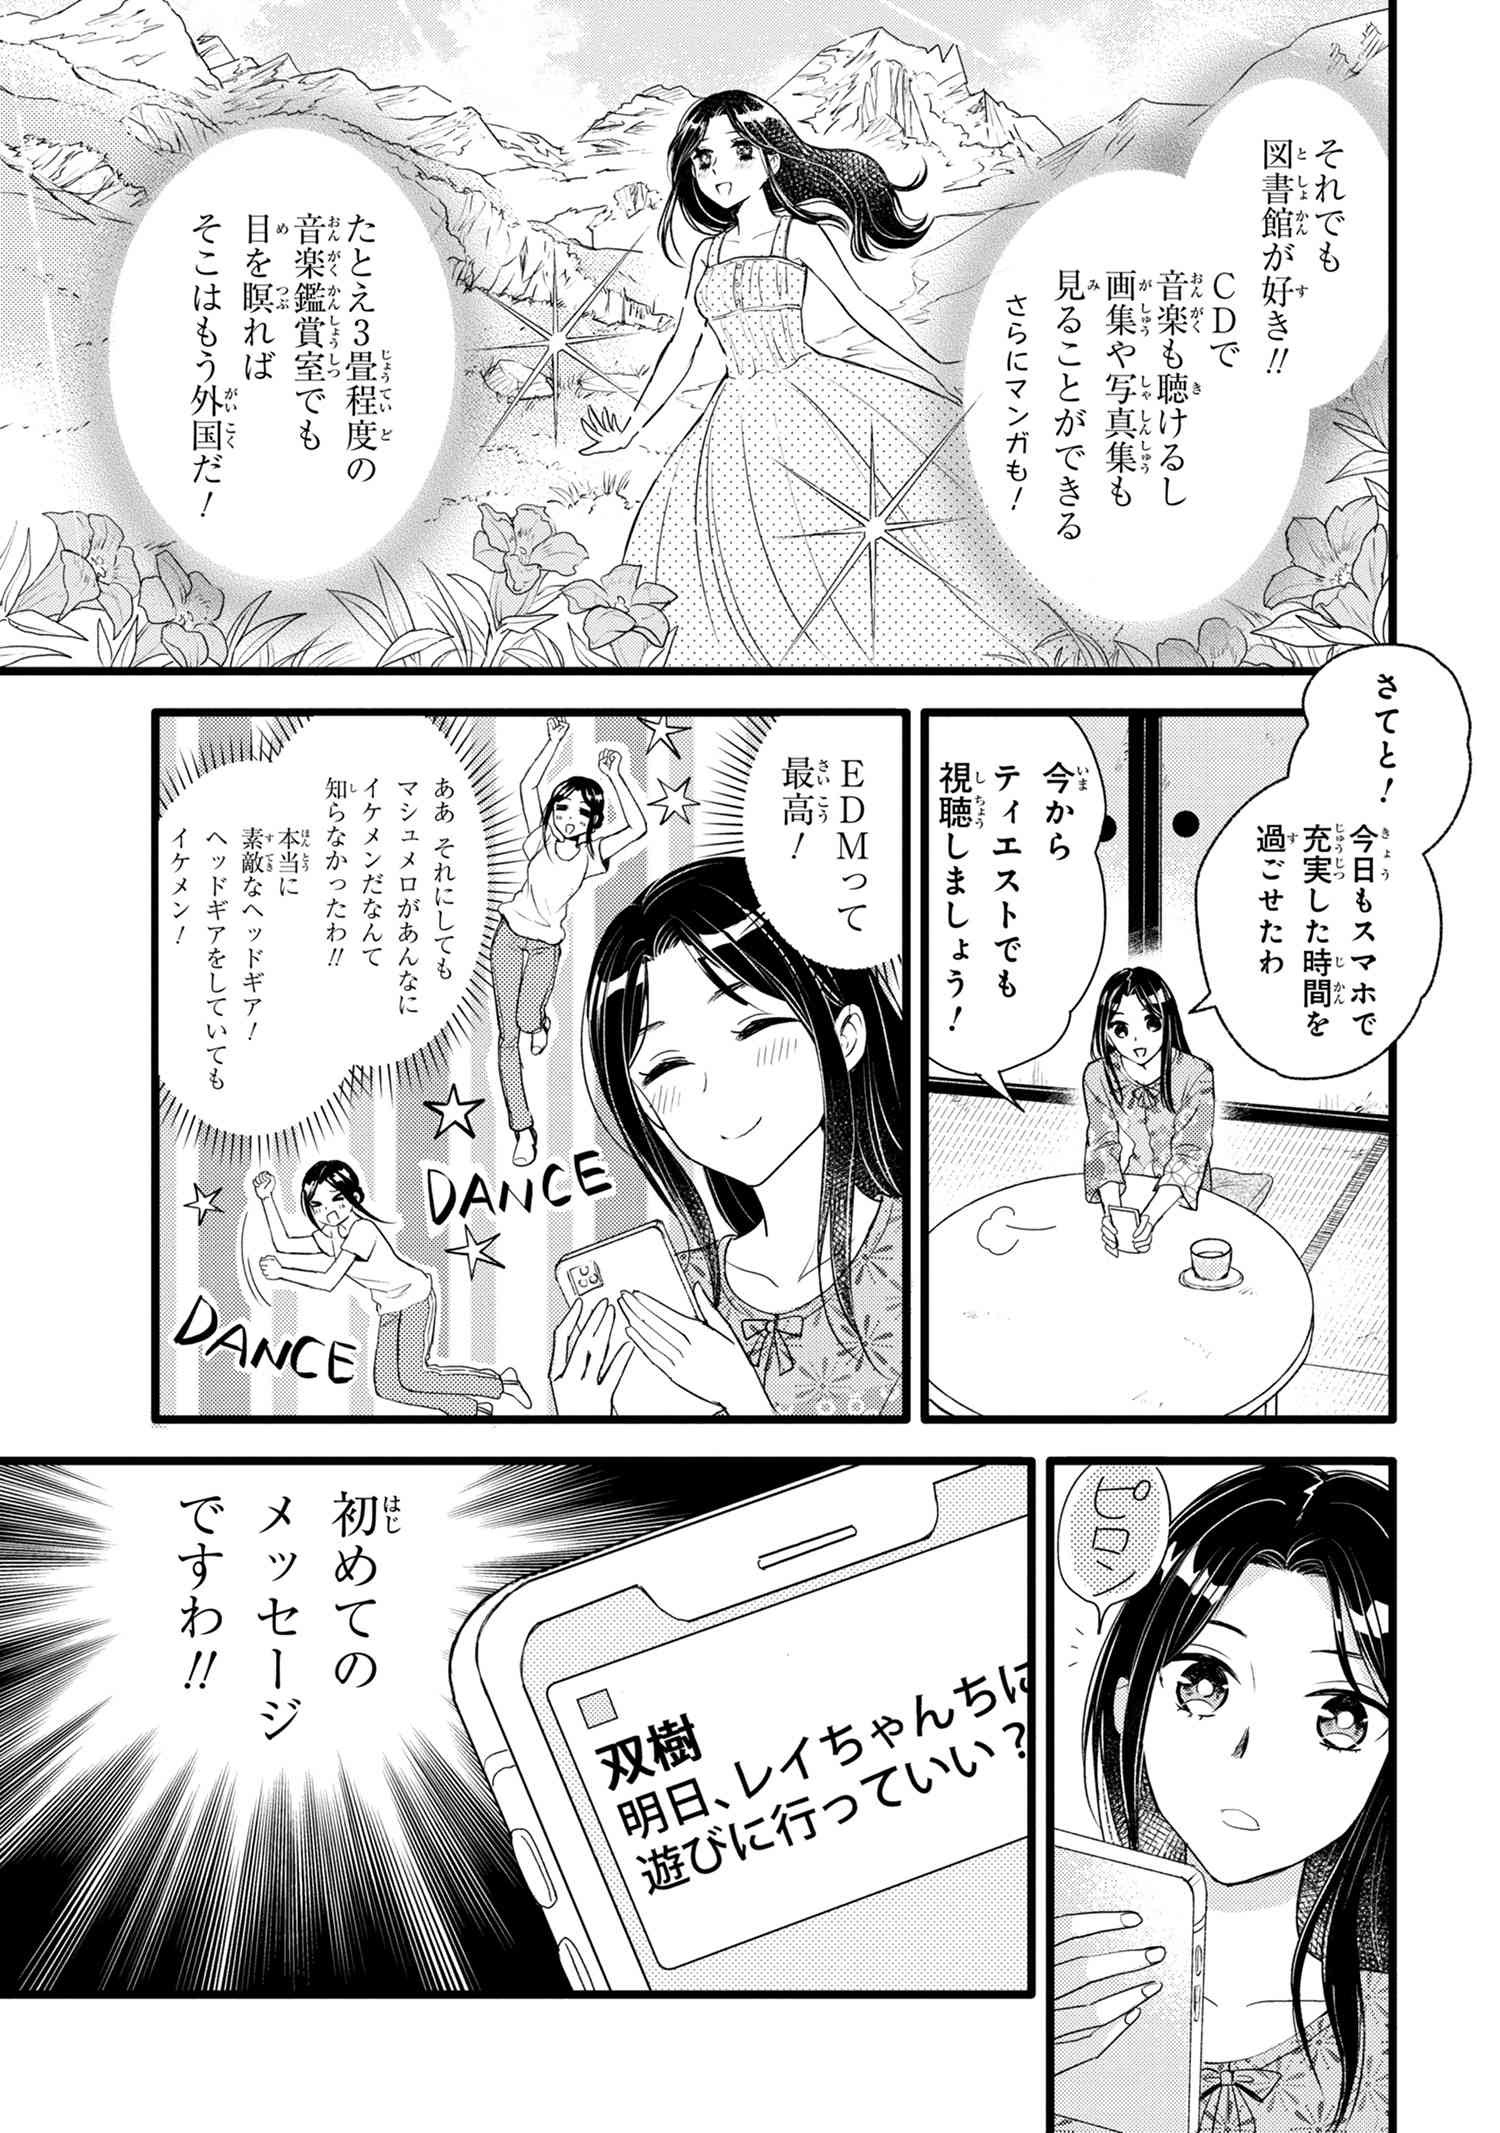 Reiko no Fuugi Akuyaku Reijou to Yobarete imasu ga, tada no Binbou Musume desu - Chapter 6-3 - Page 3